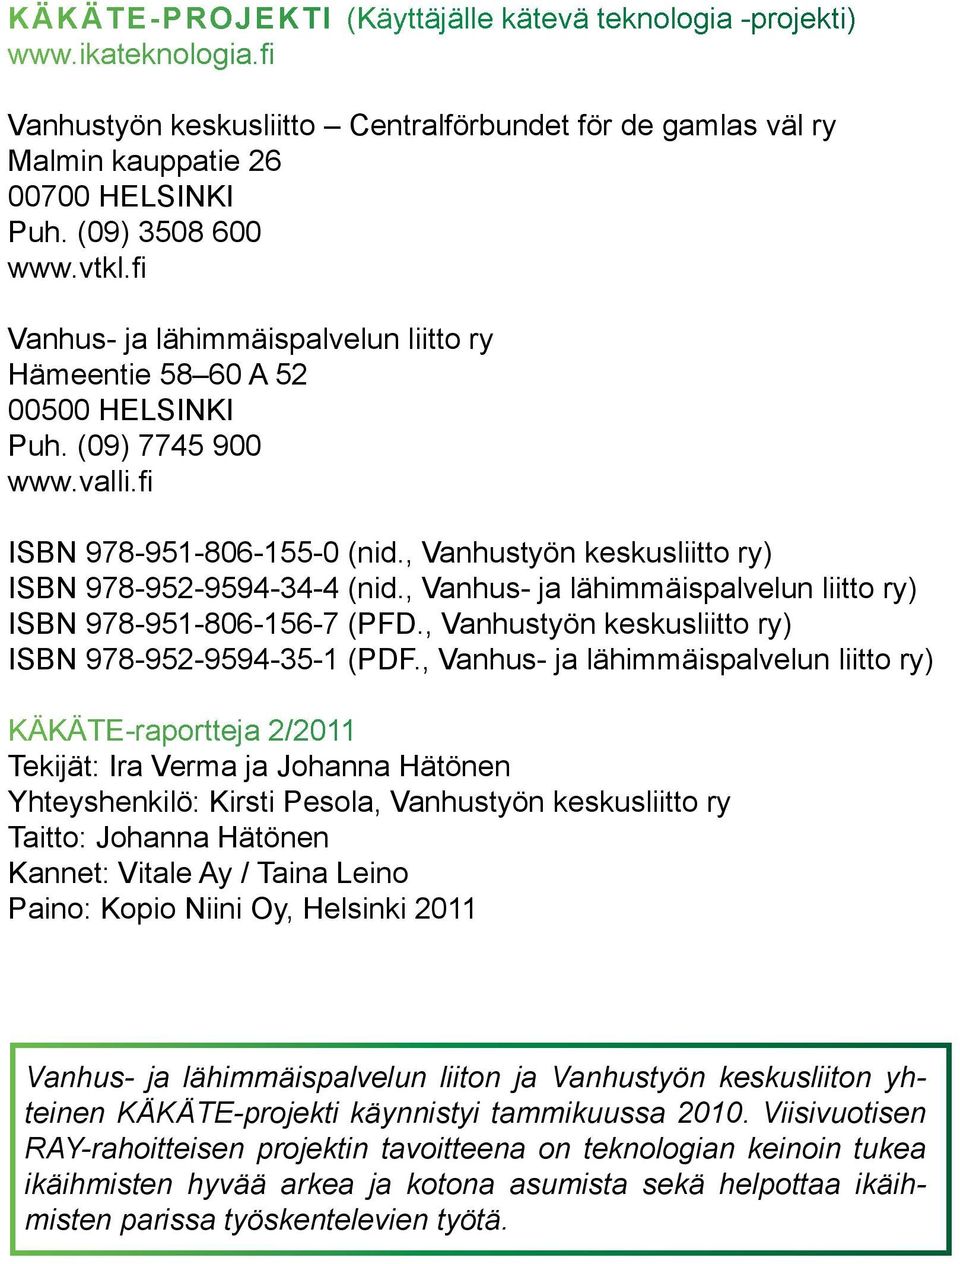 , Vanhustyön keskusliitto ry) ISBN 978-952-9594-34-4 (nid., Vanhus- ja lähimmäispalvelun liitto ry) ISBN 978-951-806-156-7 (PFD., Vanhustyön keskusliitto ry) ISBN 978-952-9594-35-1 (PDF.